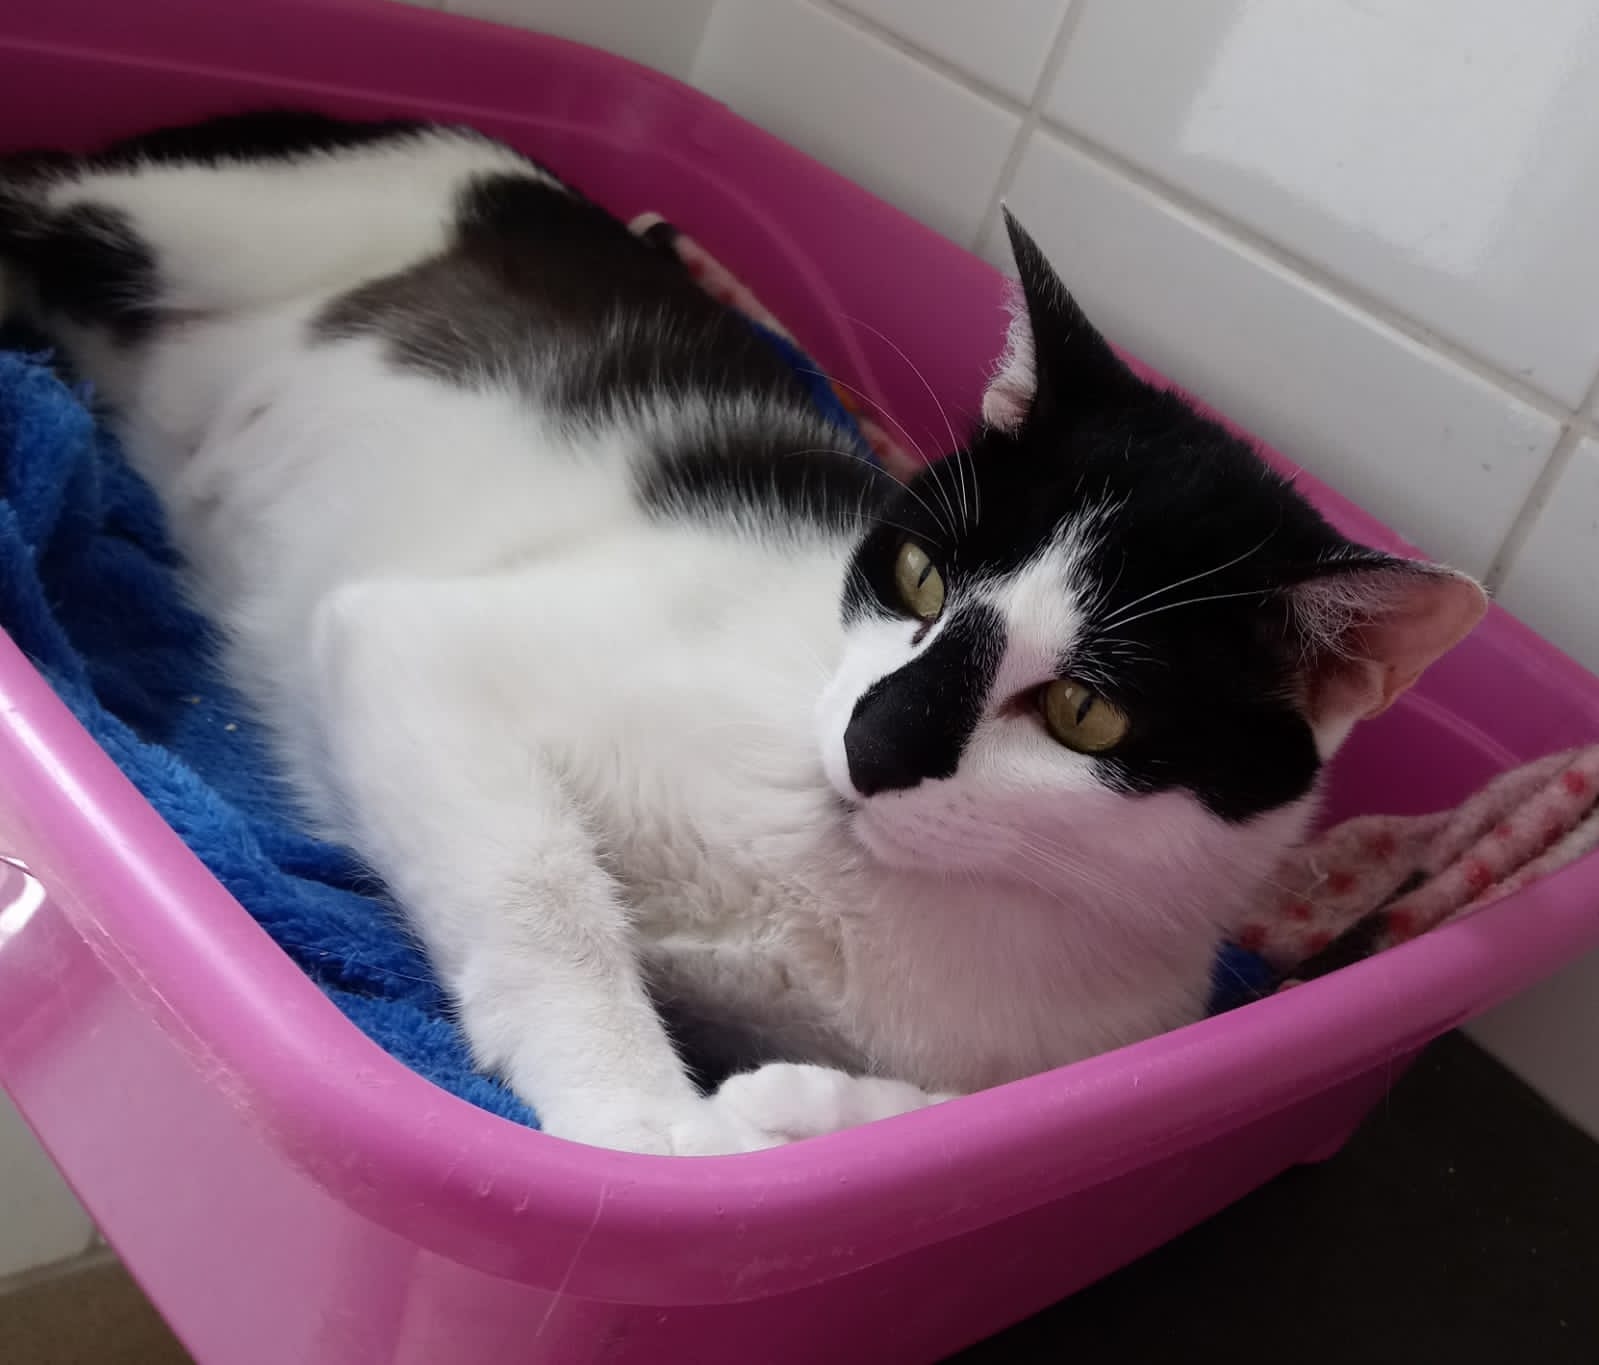 #PraCegoVer: fotografia da gata Jade. Seu pelo é preto e branco. Ela está deitada dentro de uma caixa rosa. 